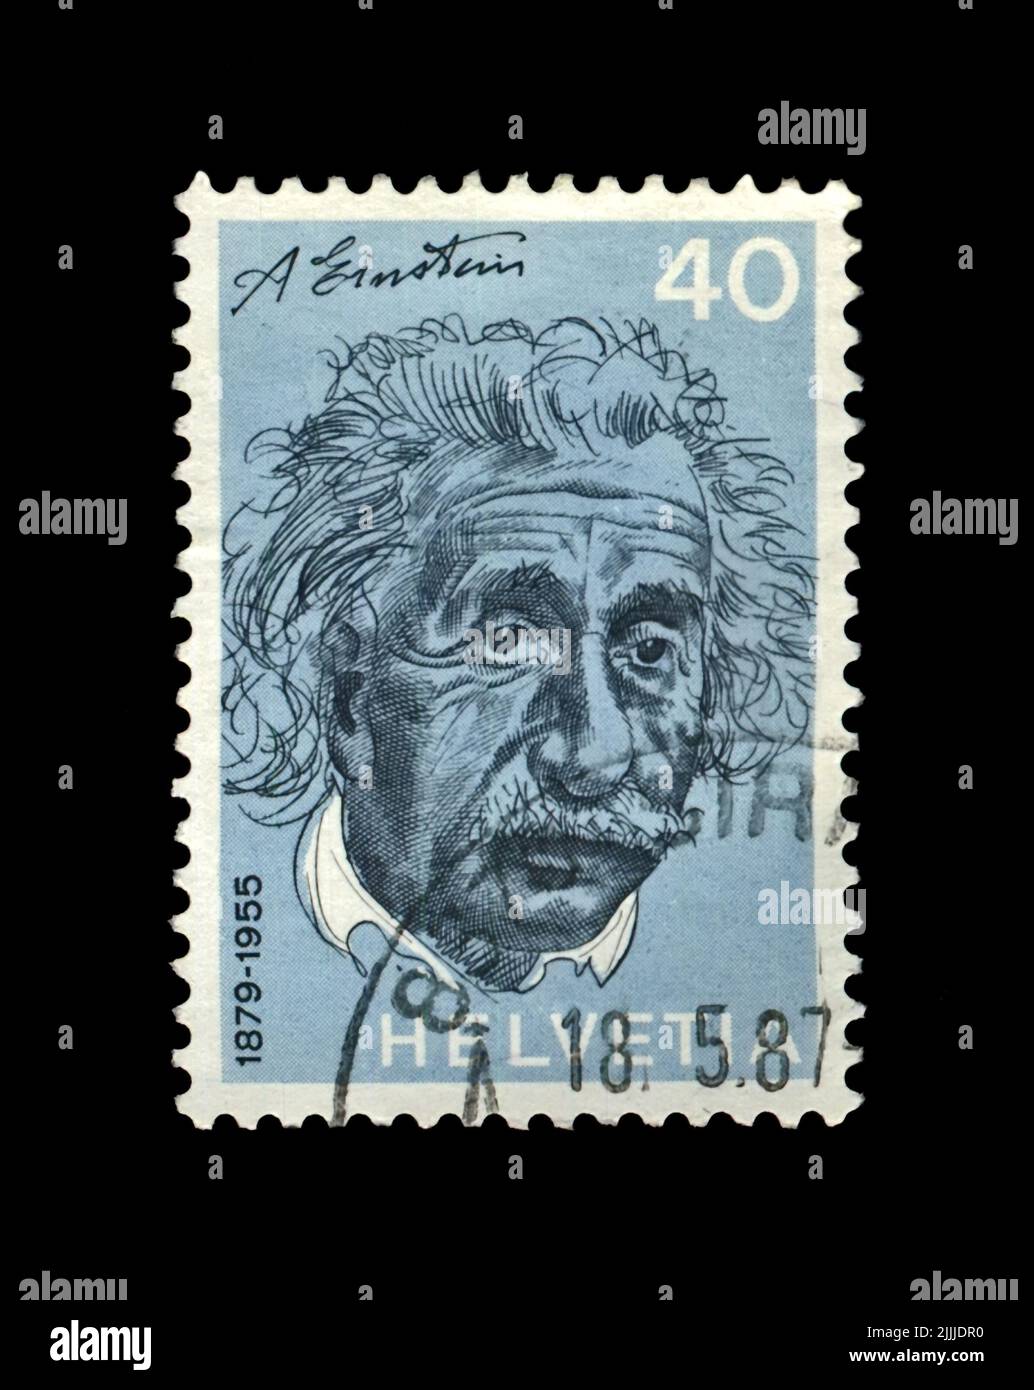 Albert Einstein, berühmter Wissenschaftler, Physiker, Nobelpreisträger, um 1972. Abgesagte Briefmarke gedruckt in der Schweiz Stockfoto